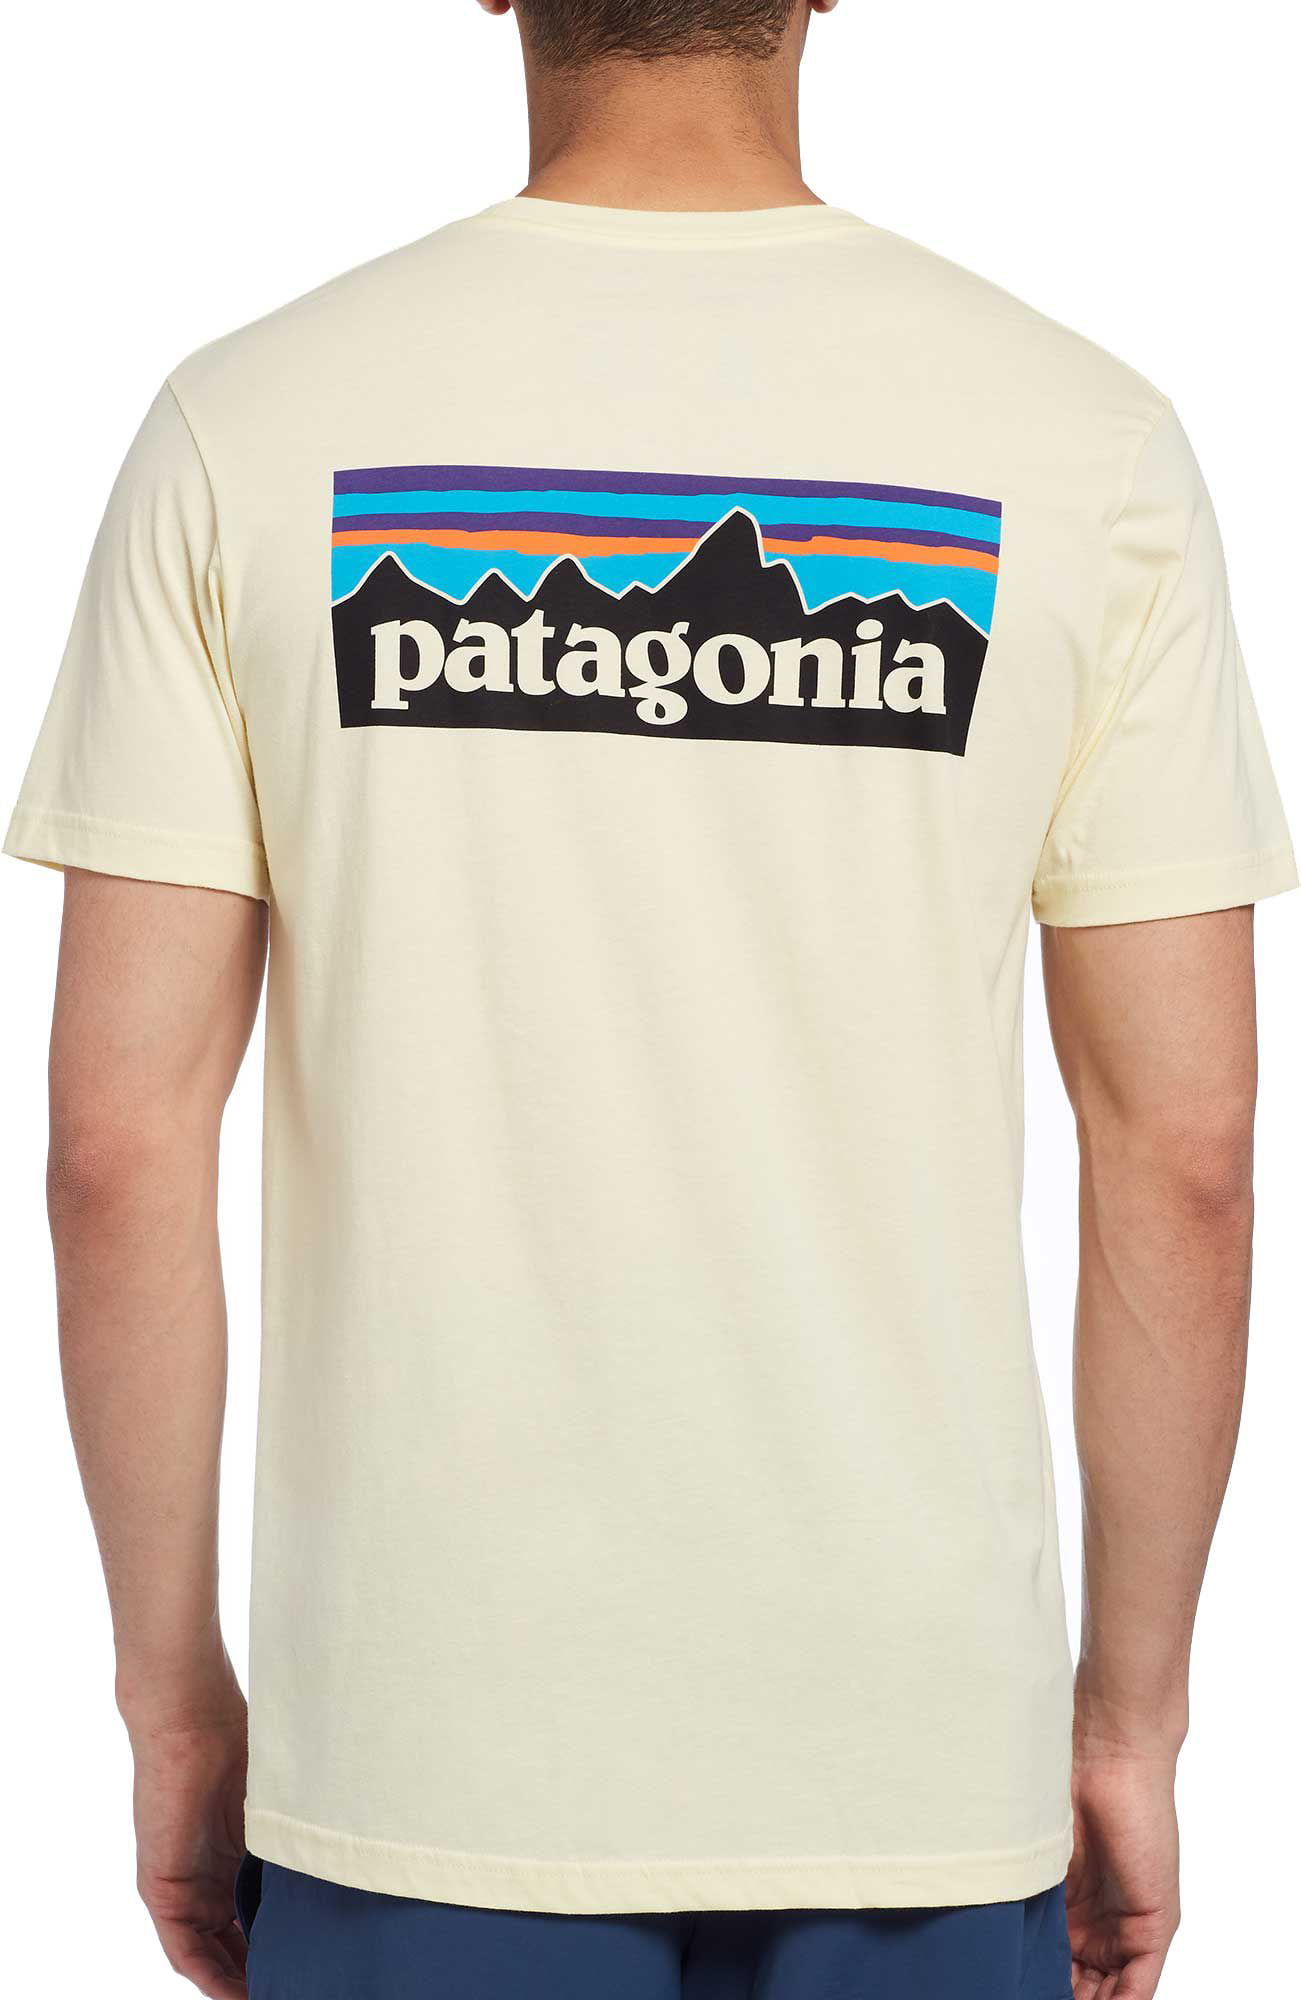 patagonia baseball shirt